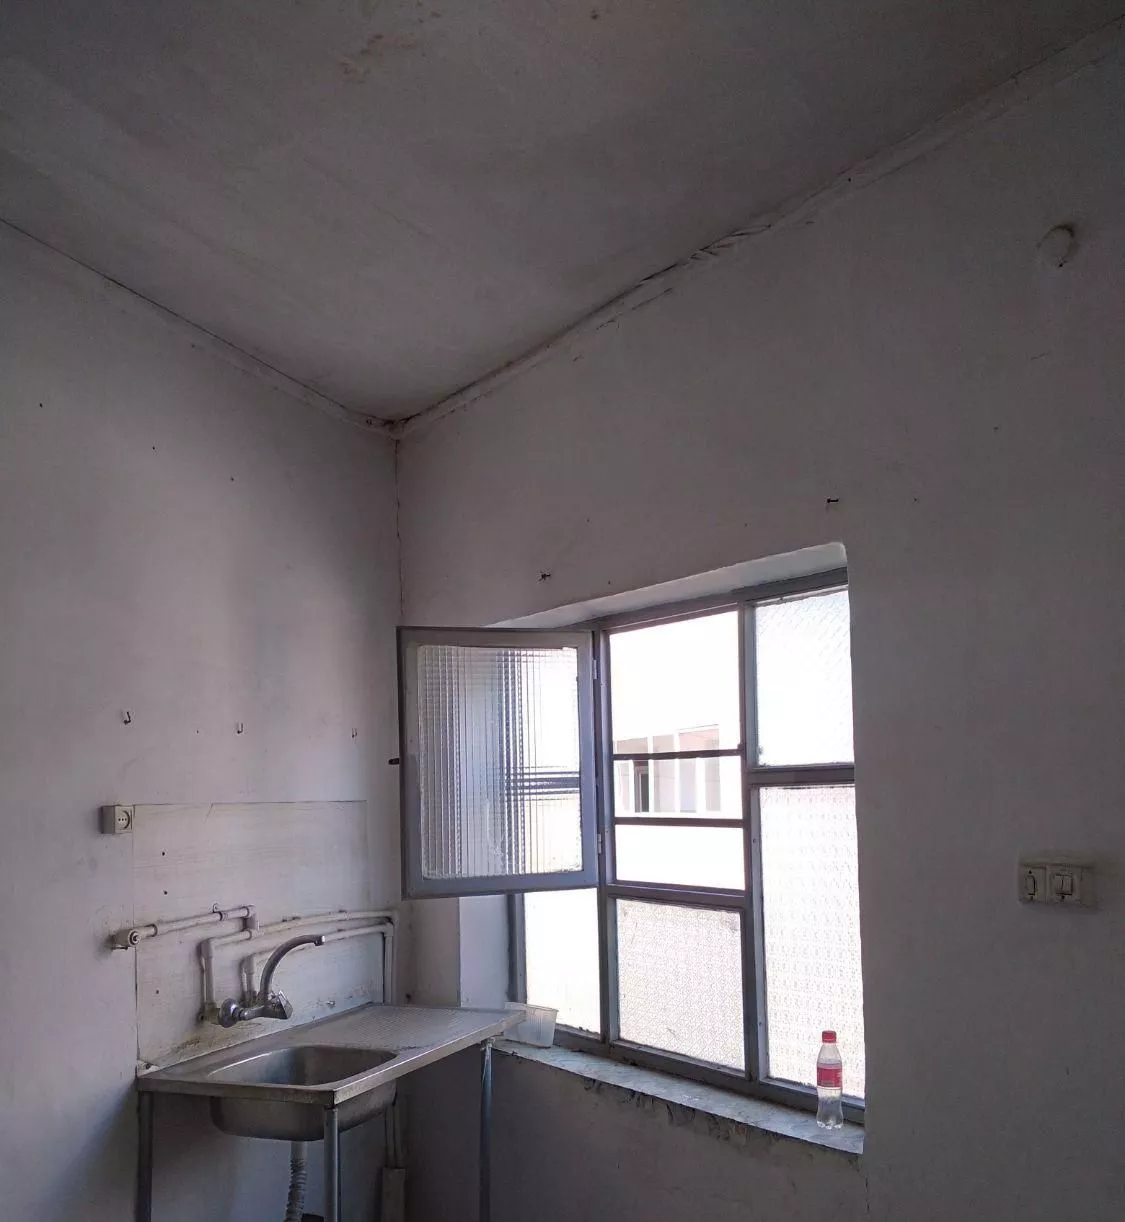 خانه ویلایی دو طبقه در شهید قره باغی سه راه بهشتی